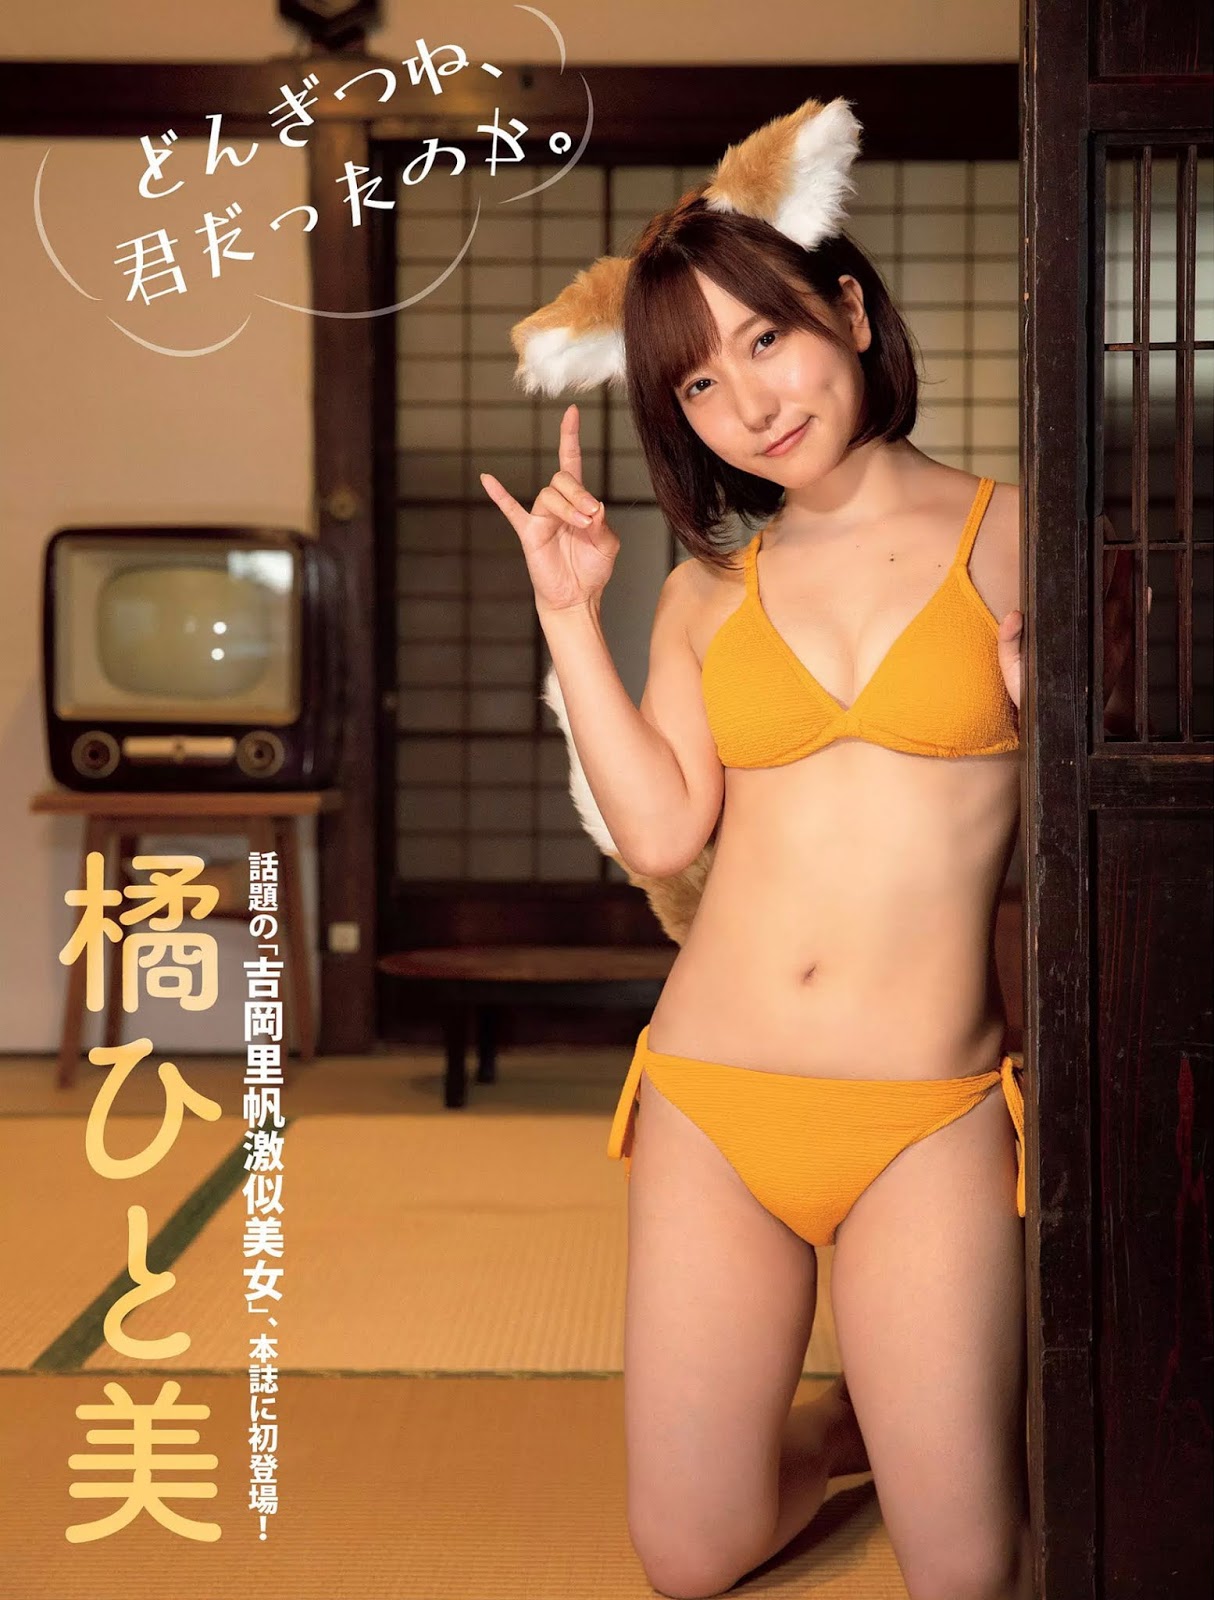 Hitomi Tachibana 橘ひと美, FLASH 2020.09.15 (フラッシュ 2020年9月15日号)